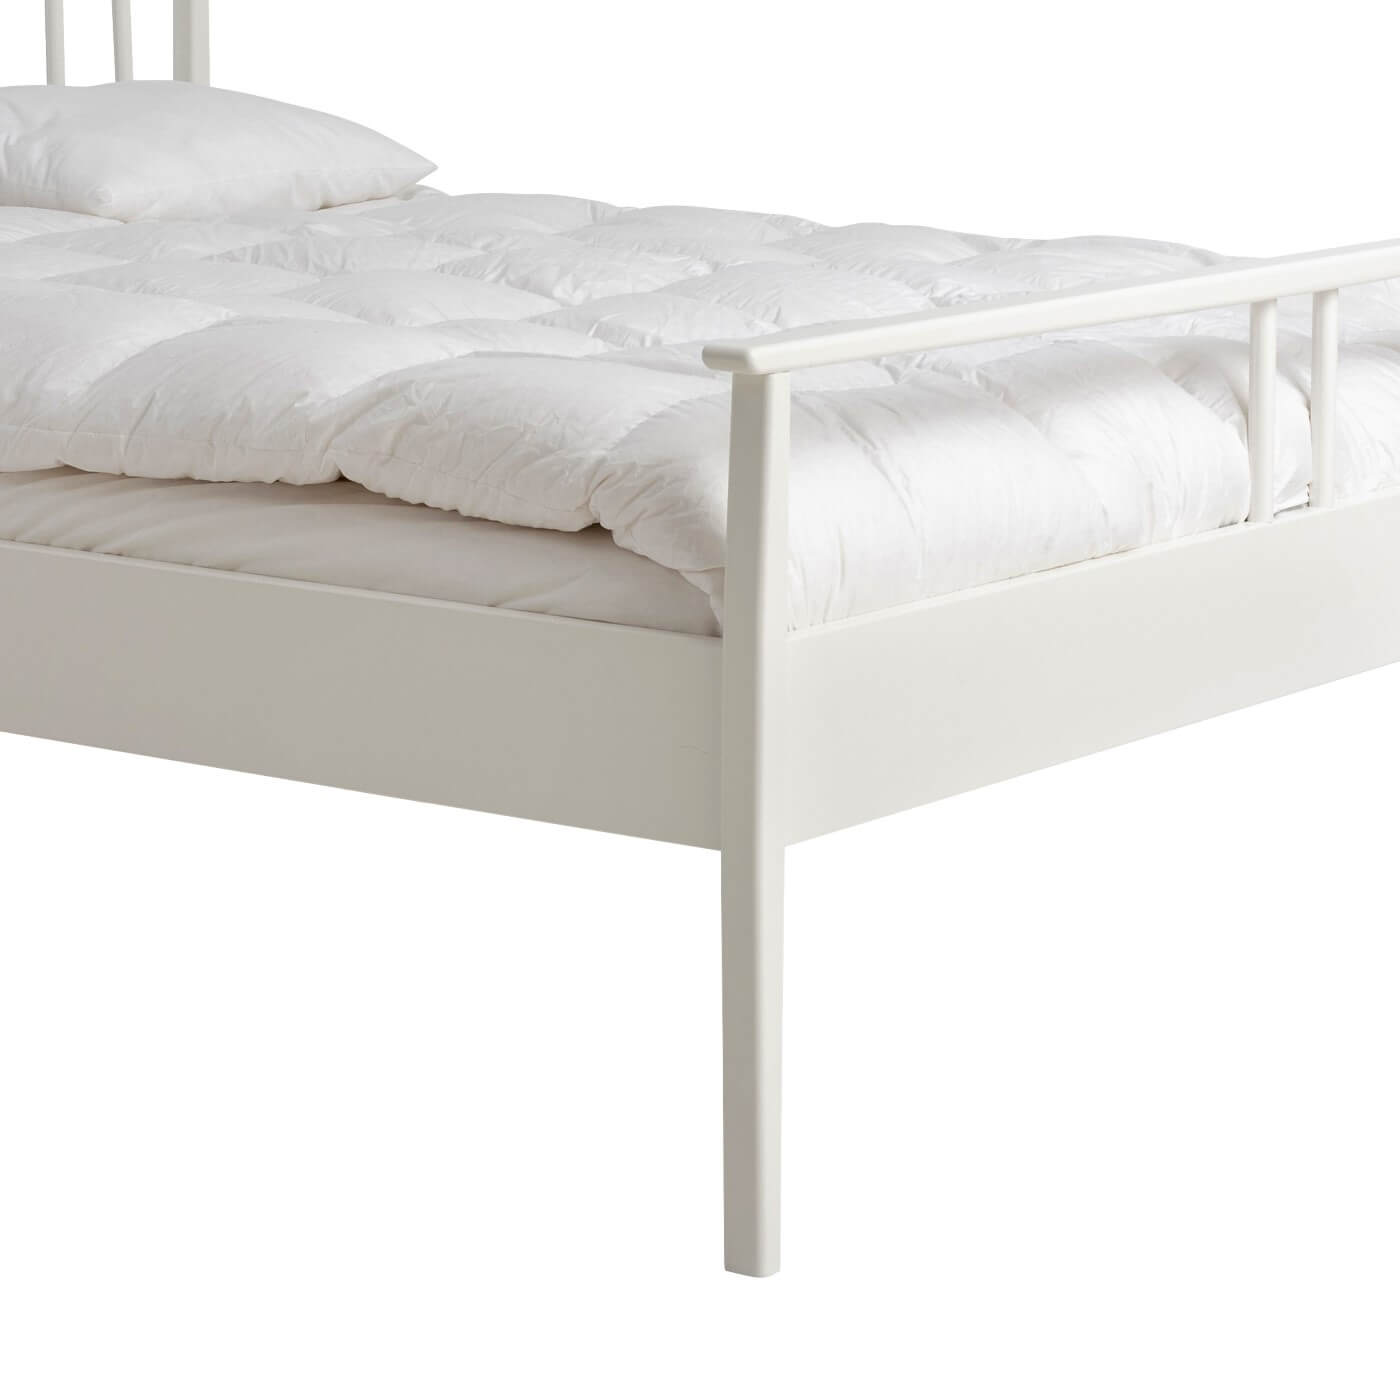 Białe łóżko drewniane nowoczesne NOEL. Przybliżony widok pięknej wysokiej nóżki z drewna brzozy w kolorze matowym białym. Skandynawski design